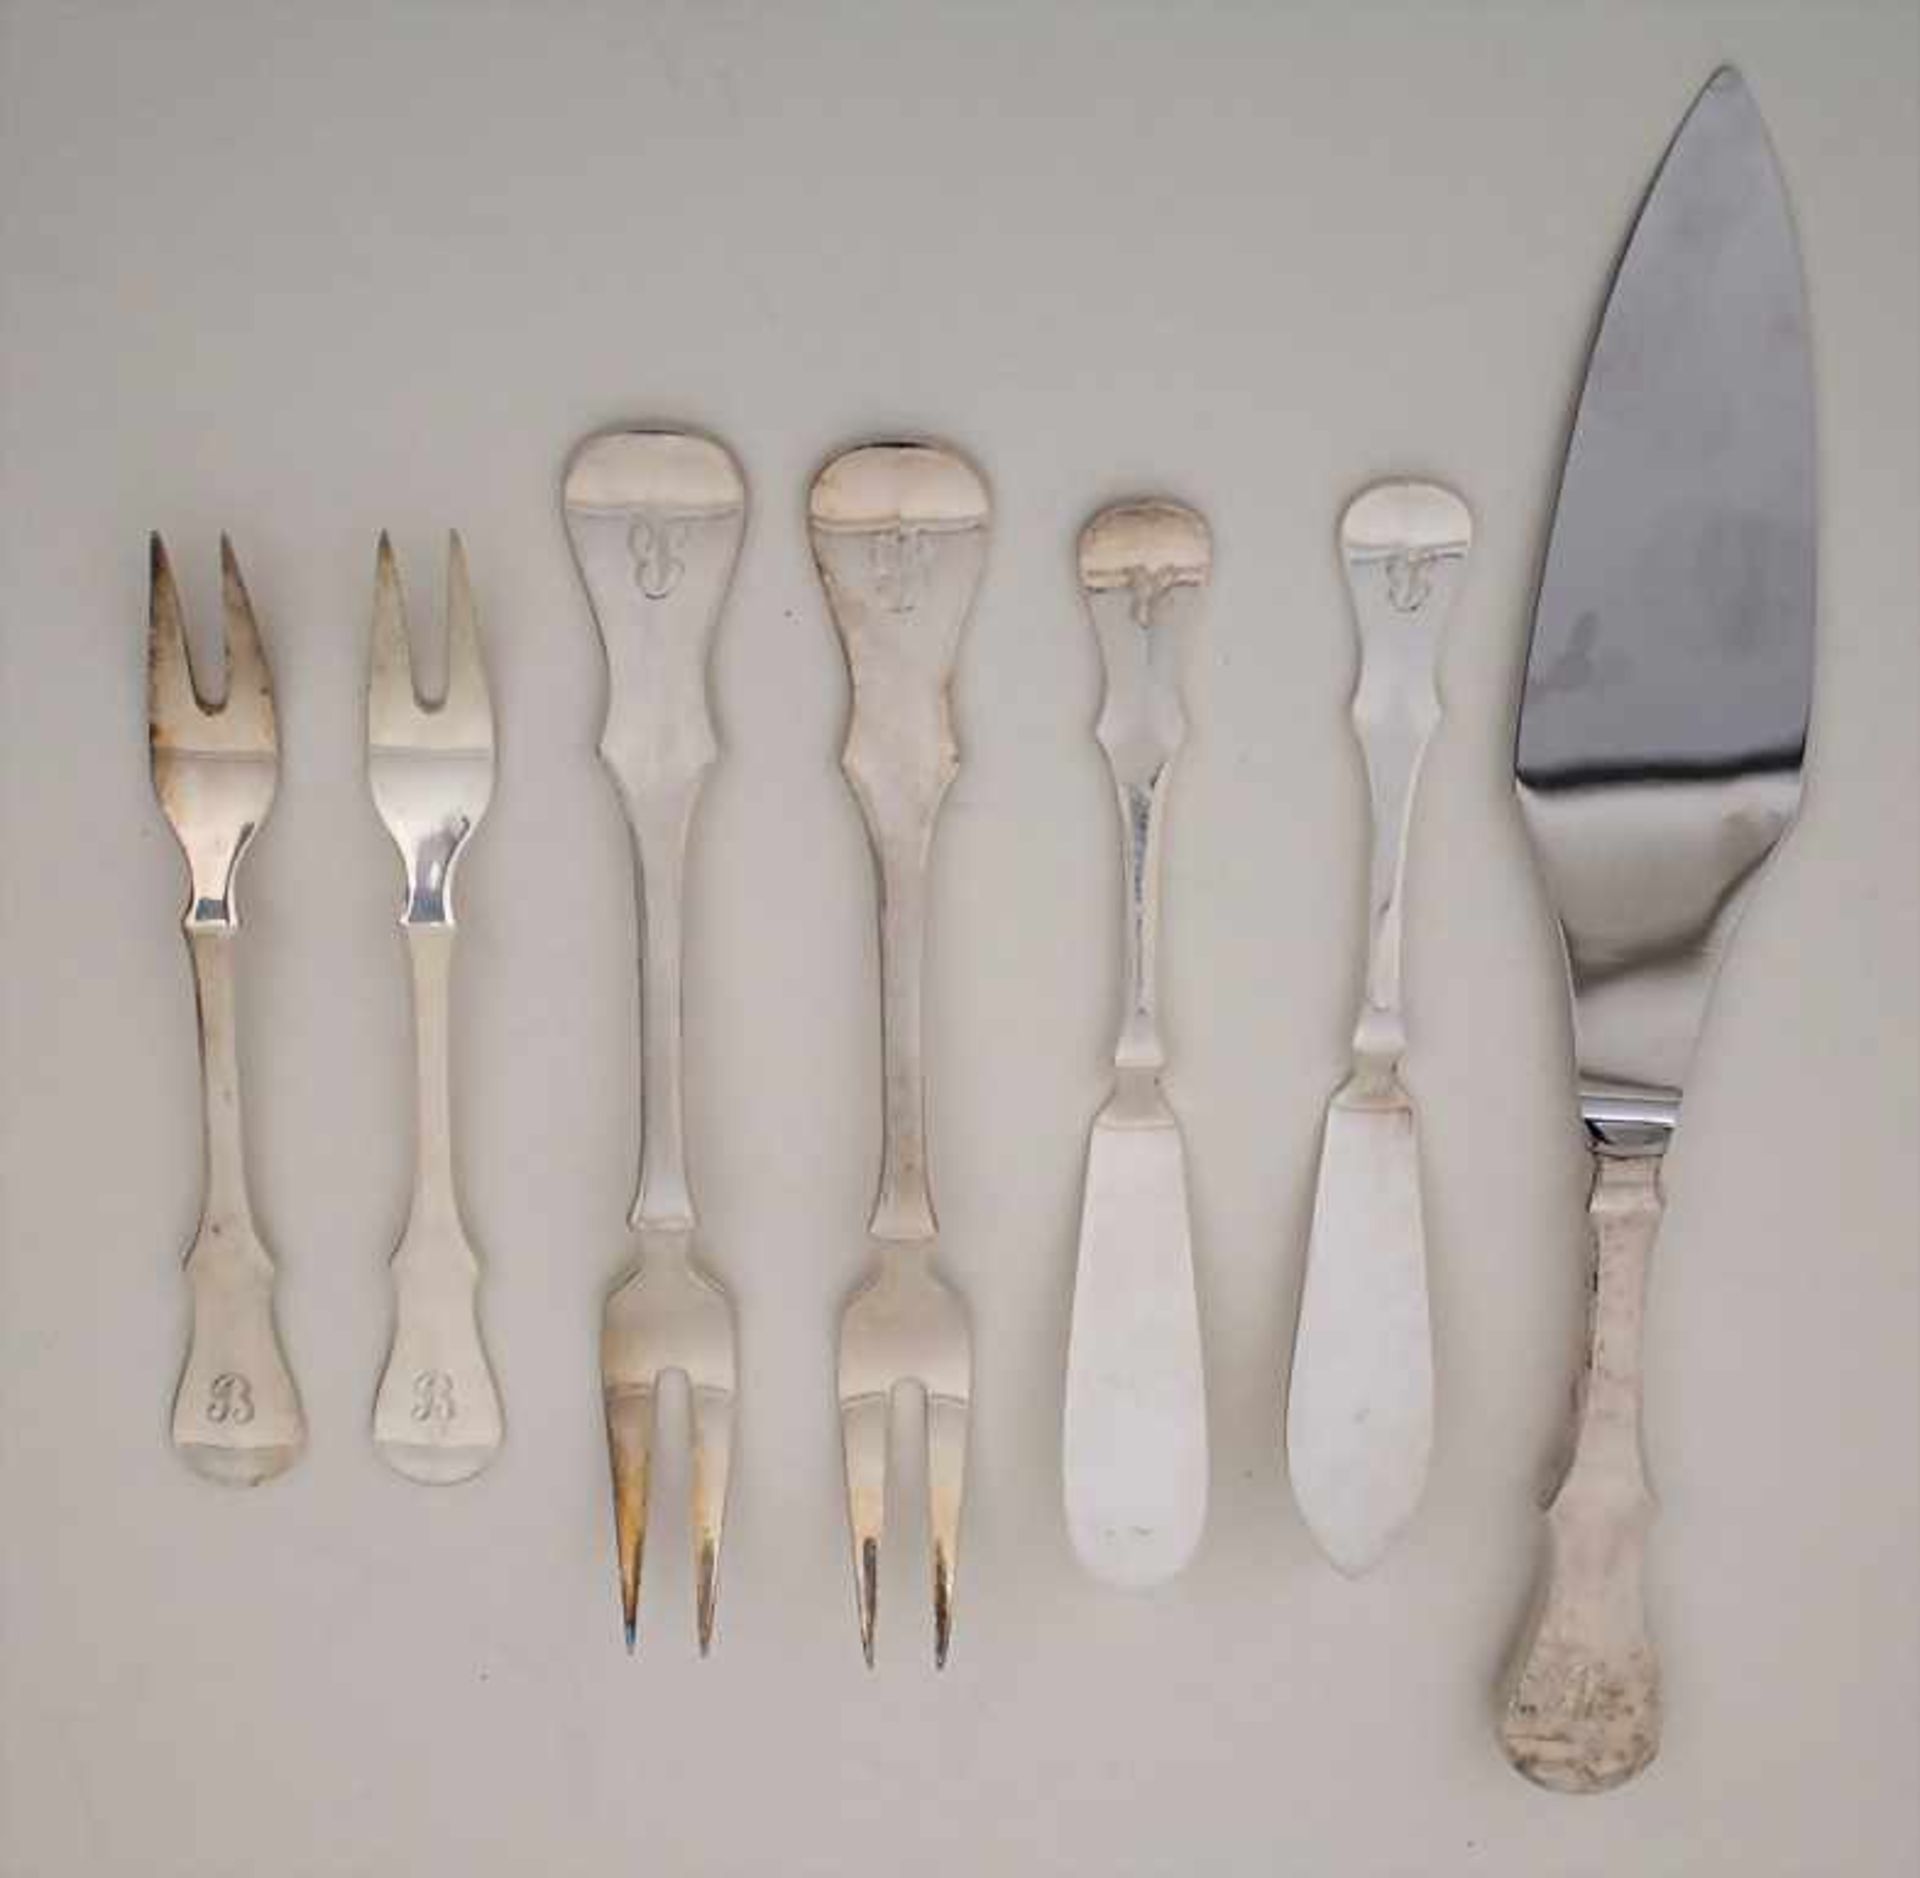 Zusatzteile / Additional silver cutlery, Robbe & Berking, Flensburg, 20. Jh.Set bestehend aus: 4